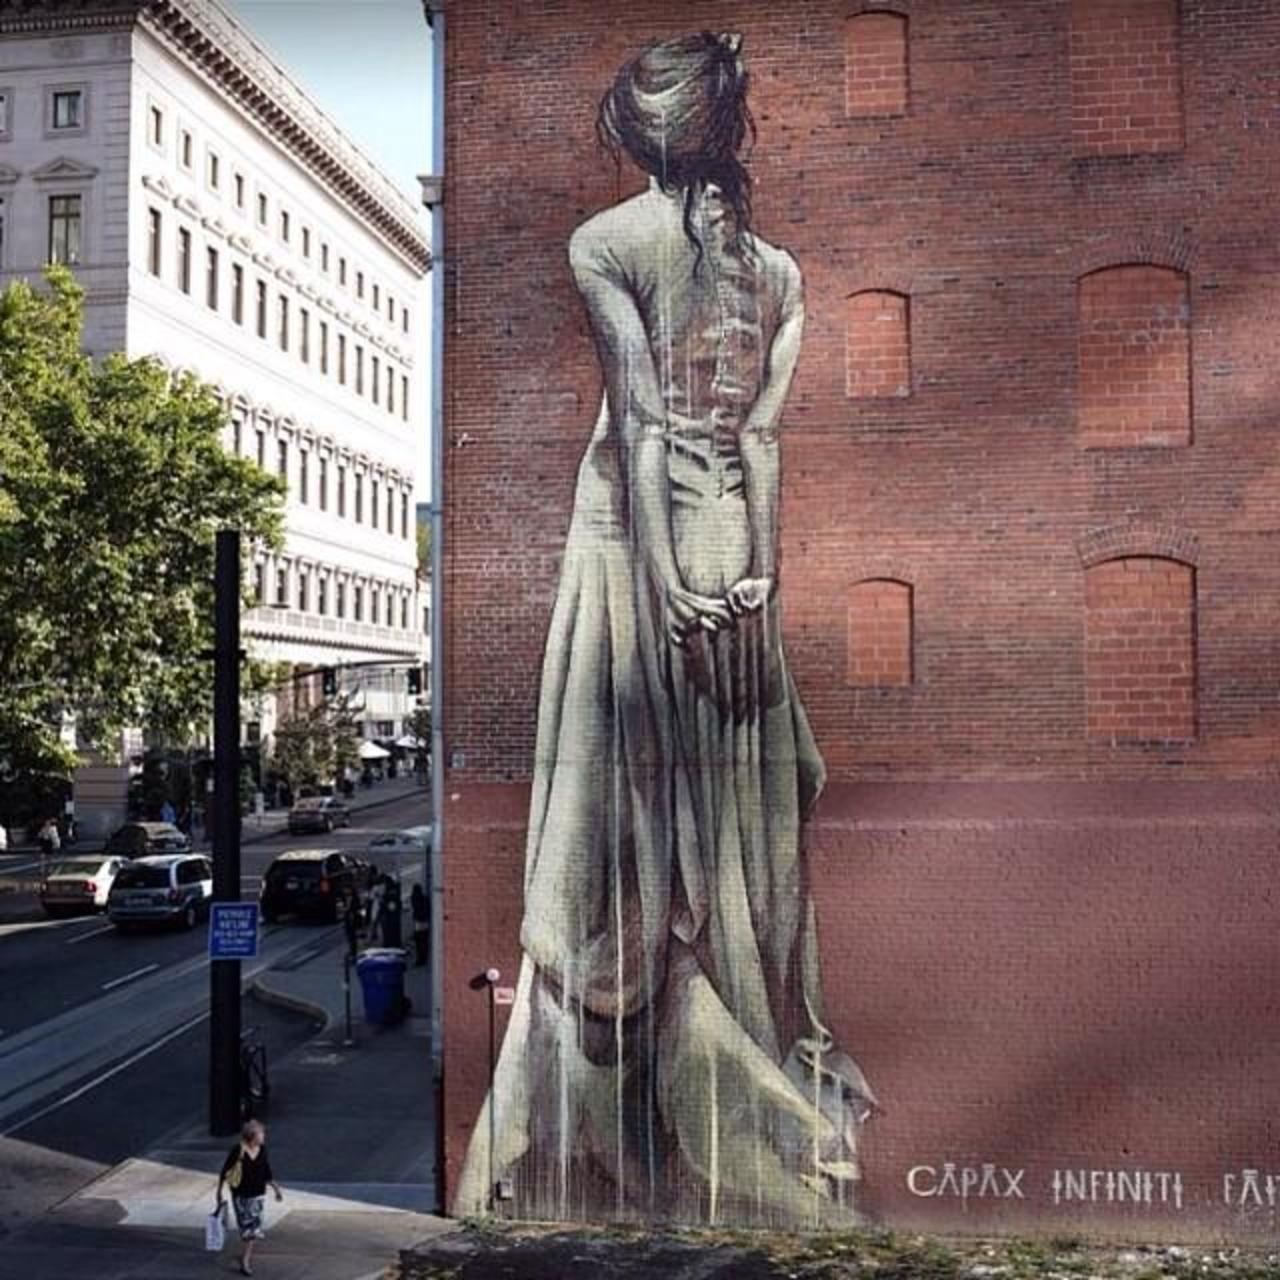 RT @designopinion: Artist @faithfourseven new huge Street Art mural 'Capax Infiniti' in Portland #art #mural #graffiti #streetart http://t.co/9aEGFXkjaV